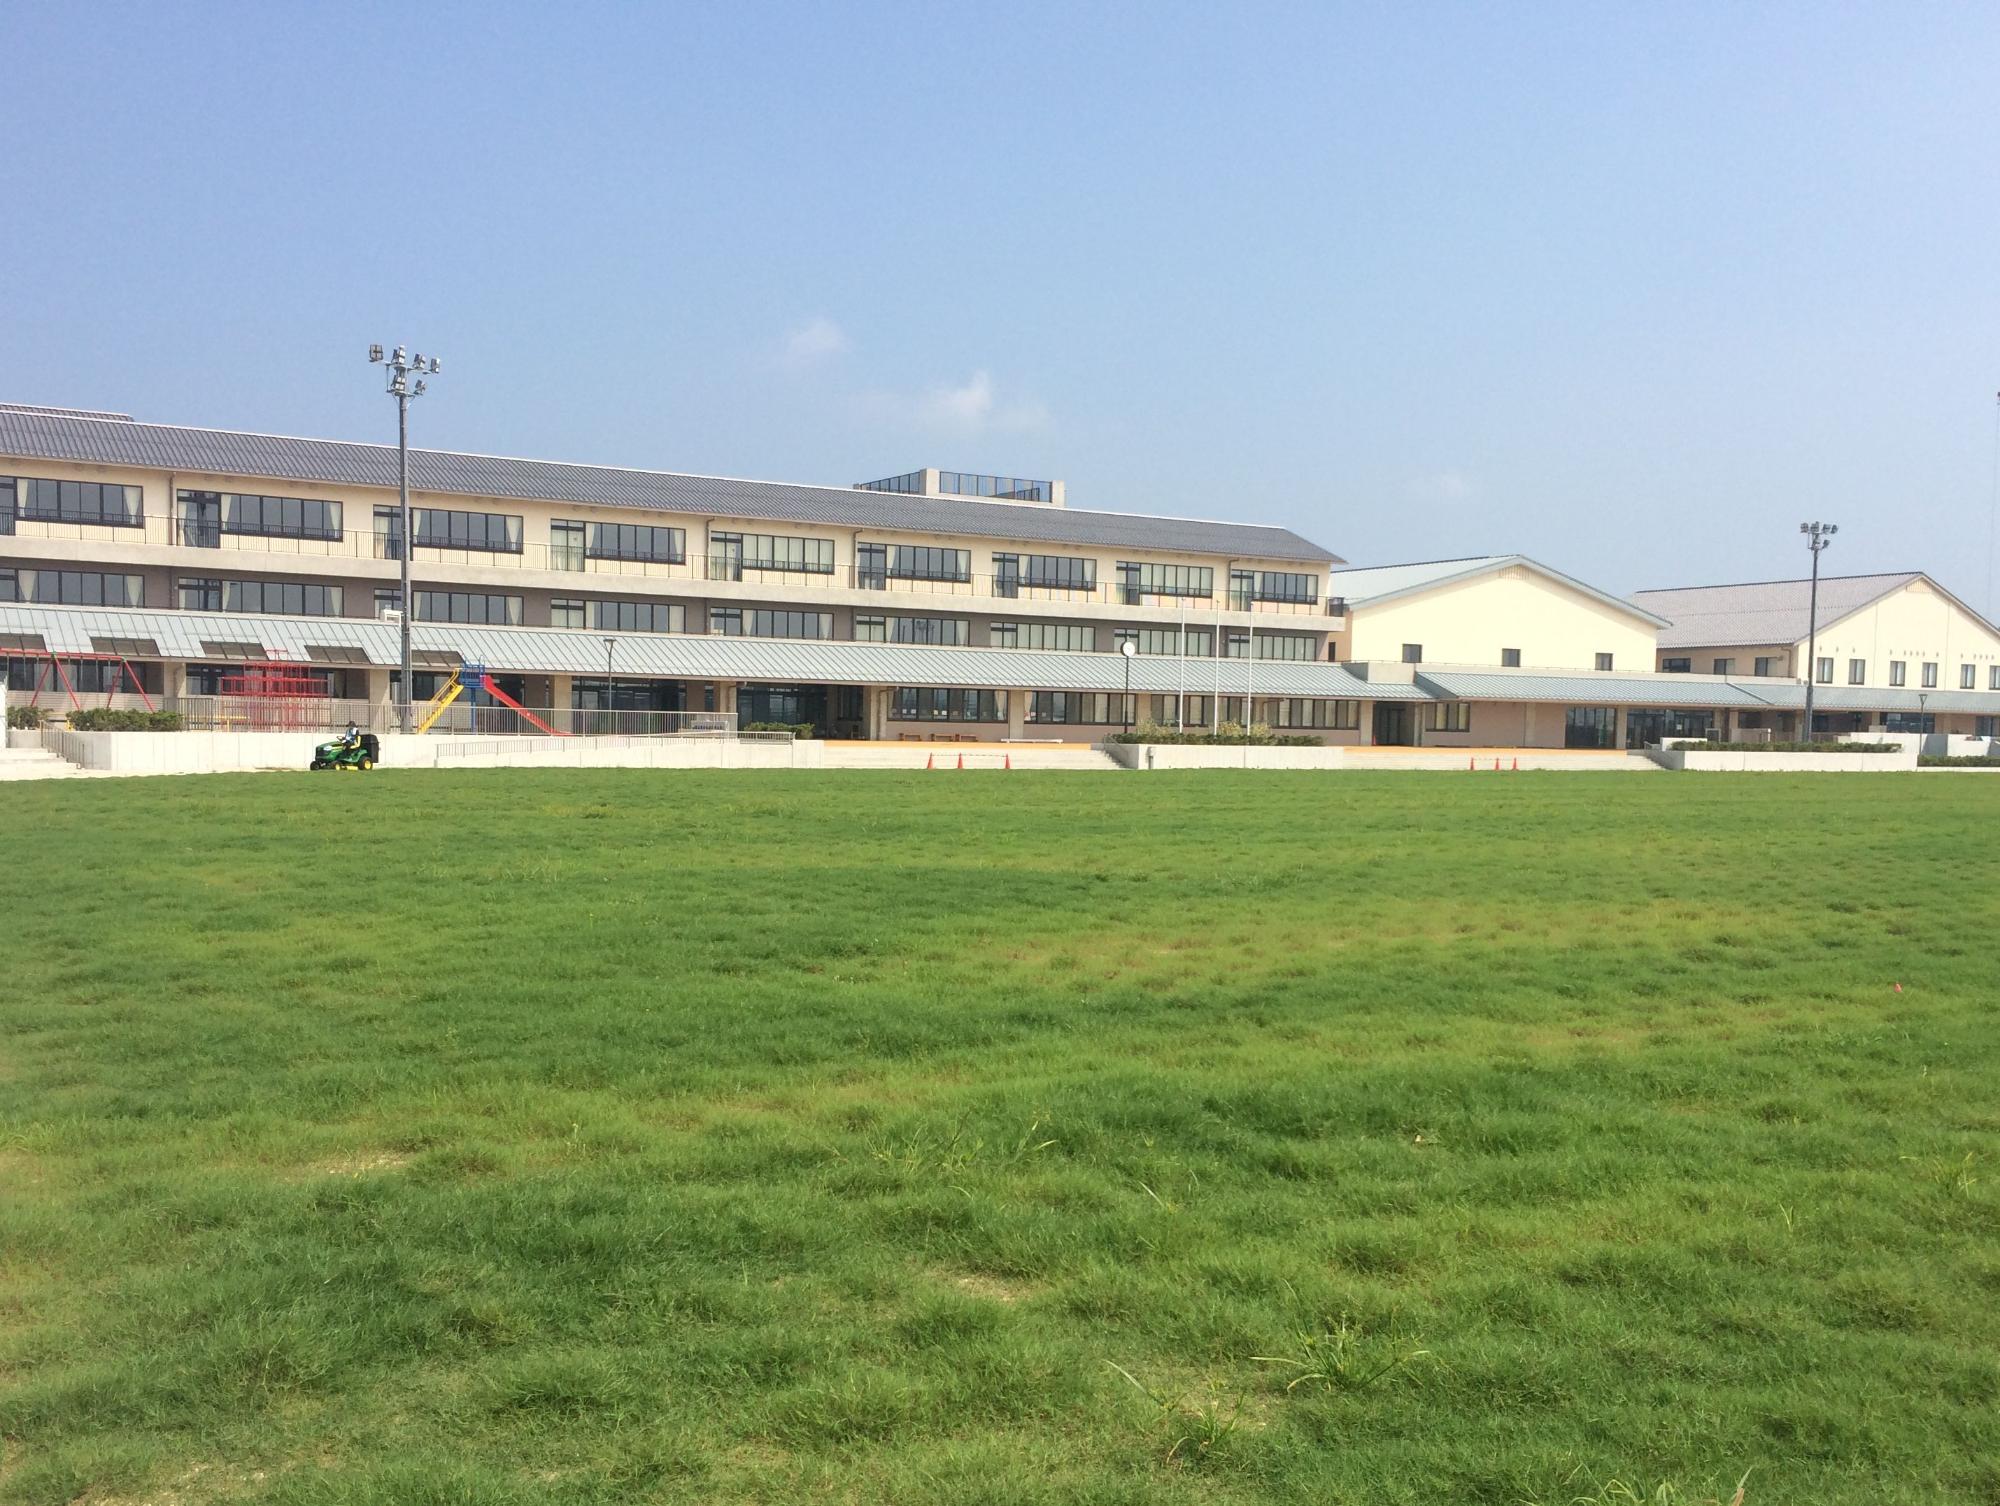 岡山小学校の校庭から校舎を望む写真